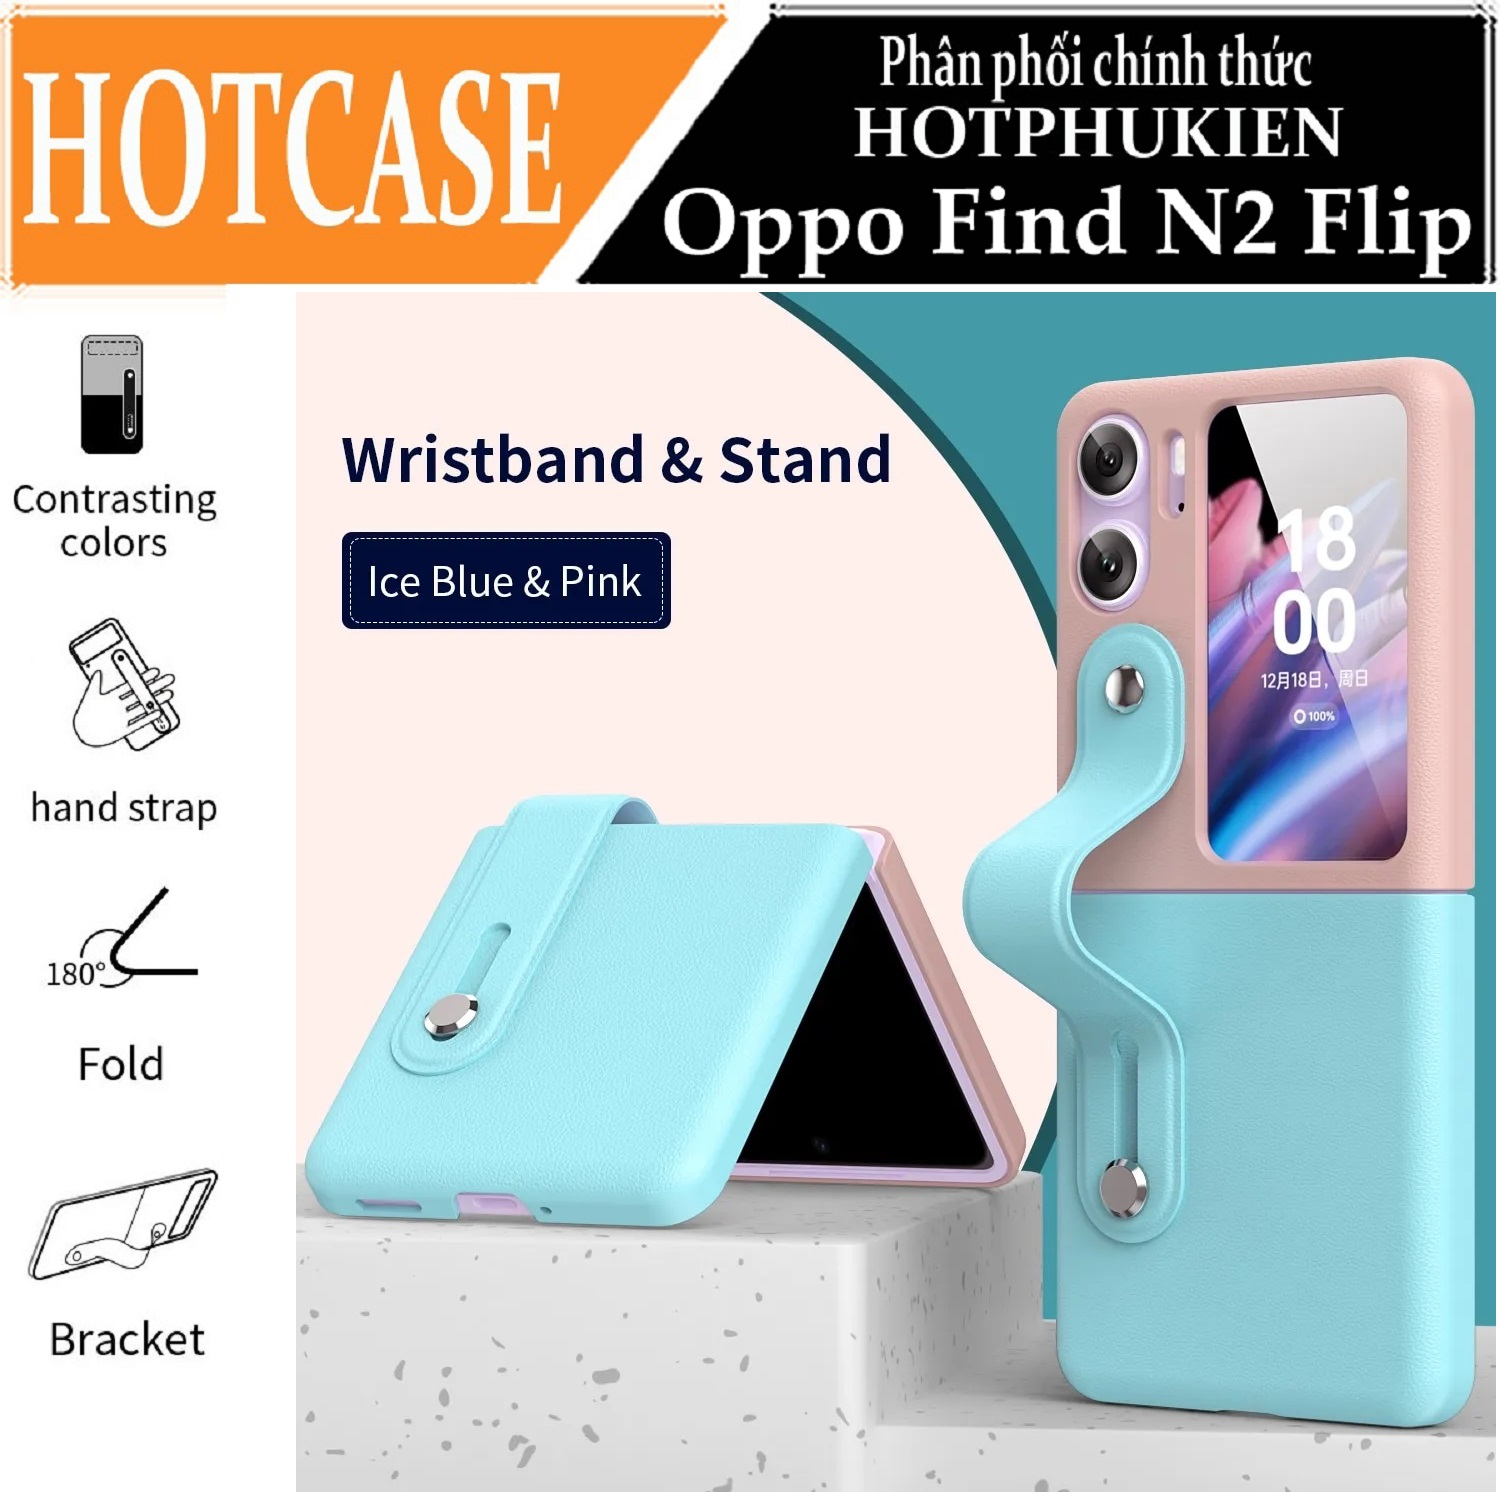 Ốp lưng đai đeo hand trap chống sốc cho Oppo Find N2 Flip hiệu HOTCASE Wristband Stand Phone Case - chất liệu cao cấp, thiết kế thời trang sang trọng có đai đeo tay an toàn - Hàng nhập khẩu